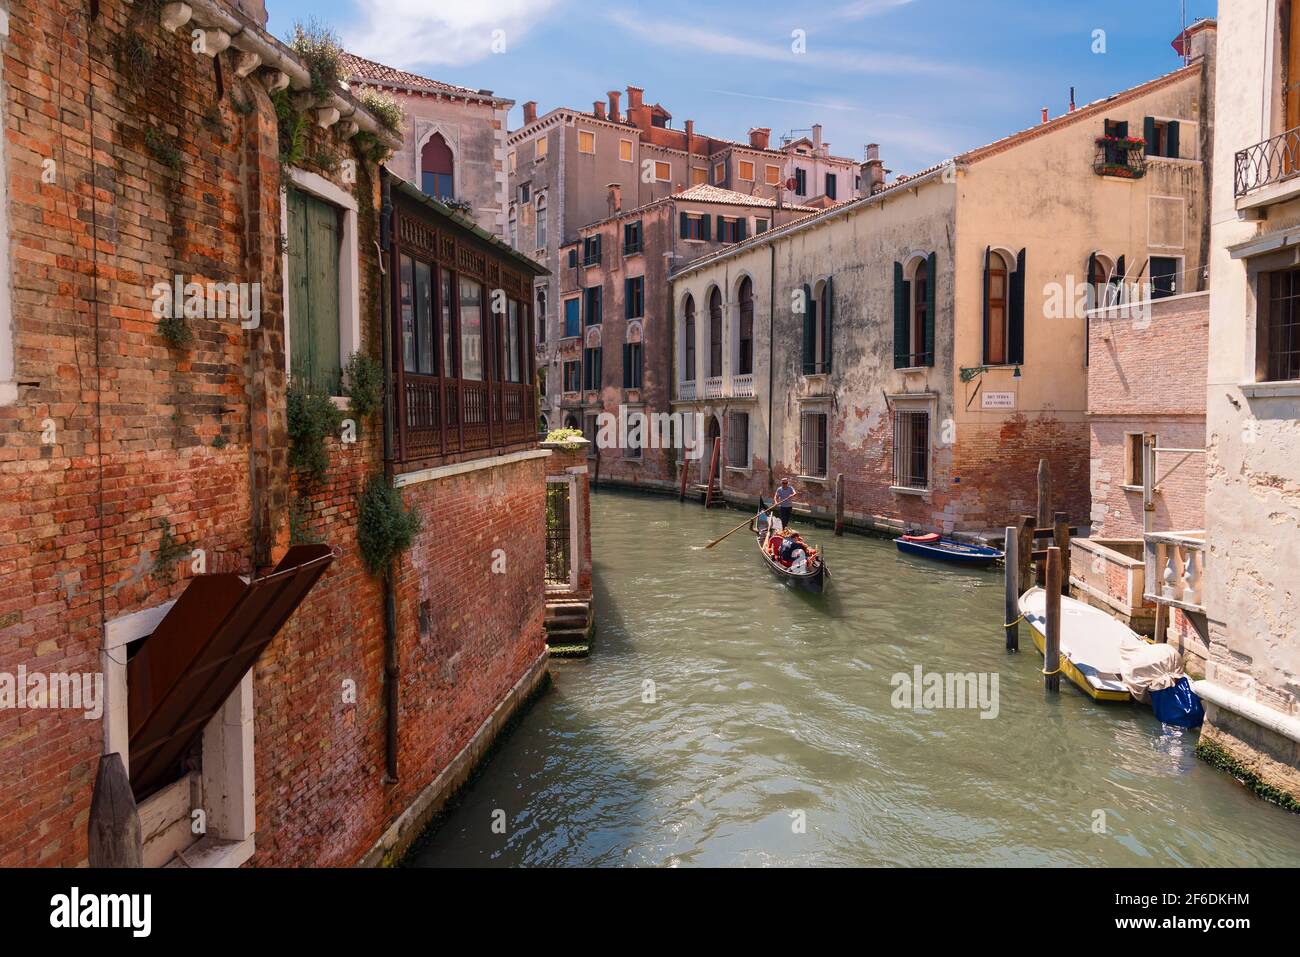 VENEZIA, 23 MAGGIO 2017: Tradizionale strada a canale stretto con gondole e vecchie case a Venezia. Architettura e monumenti di Venezia Foto Stock